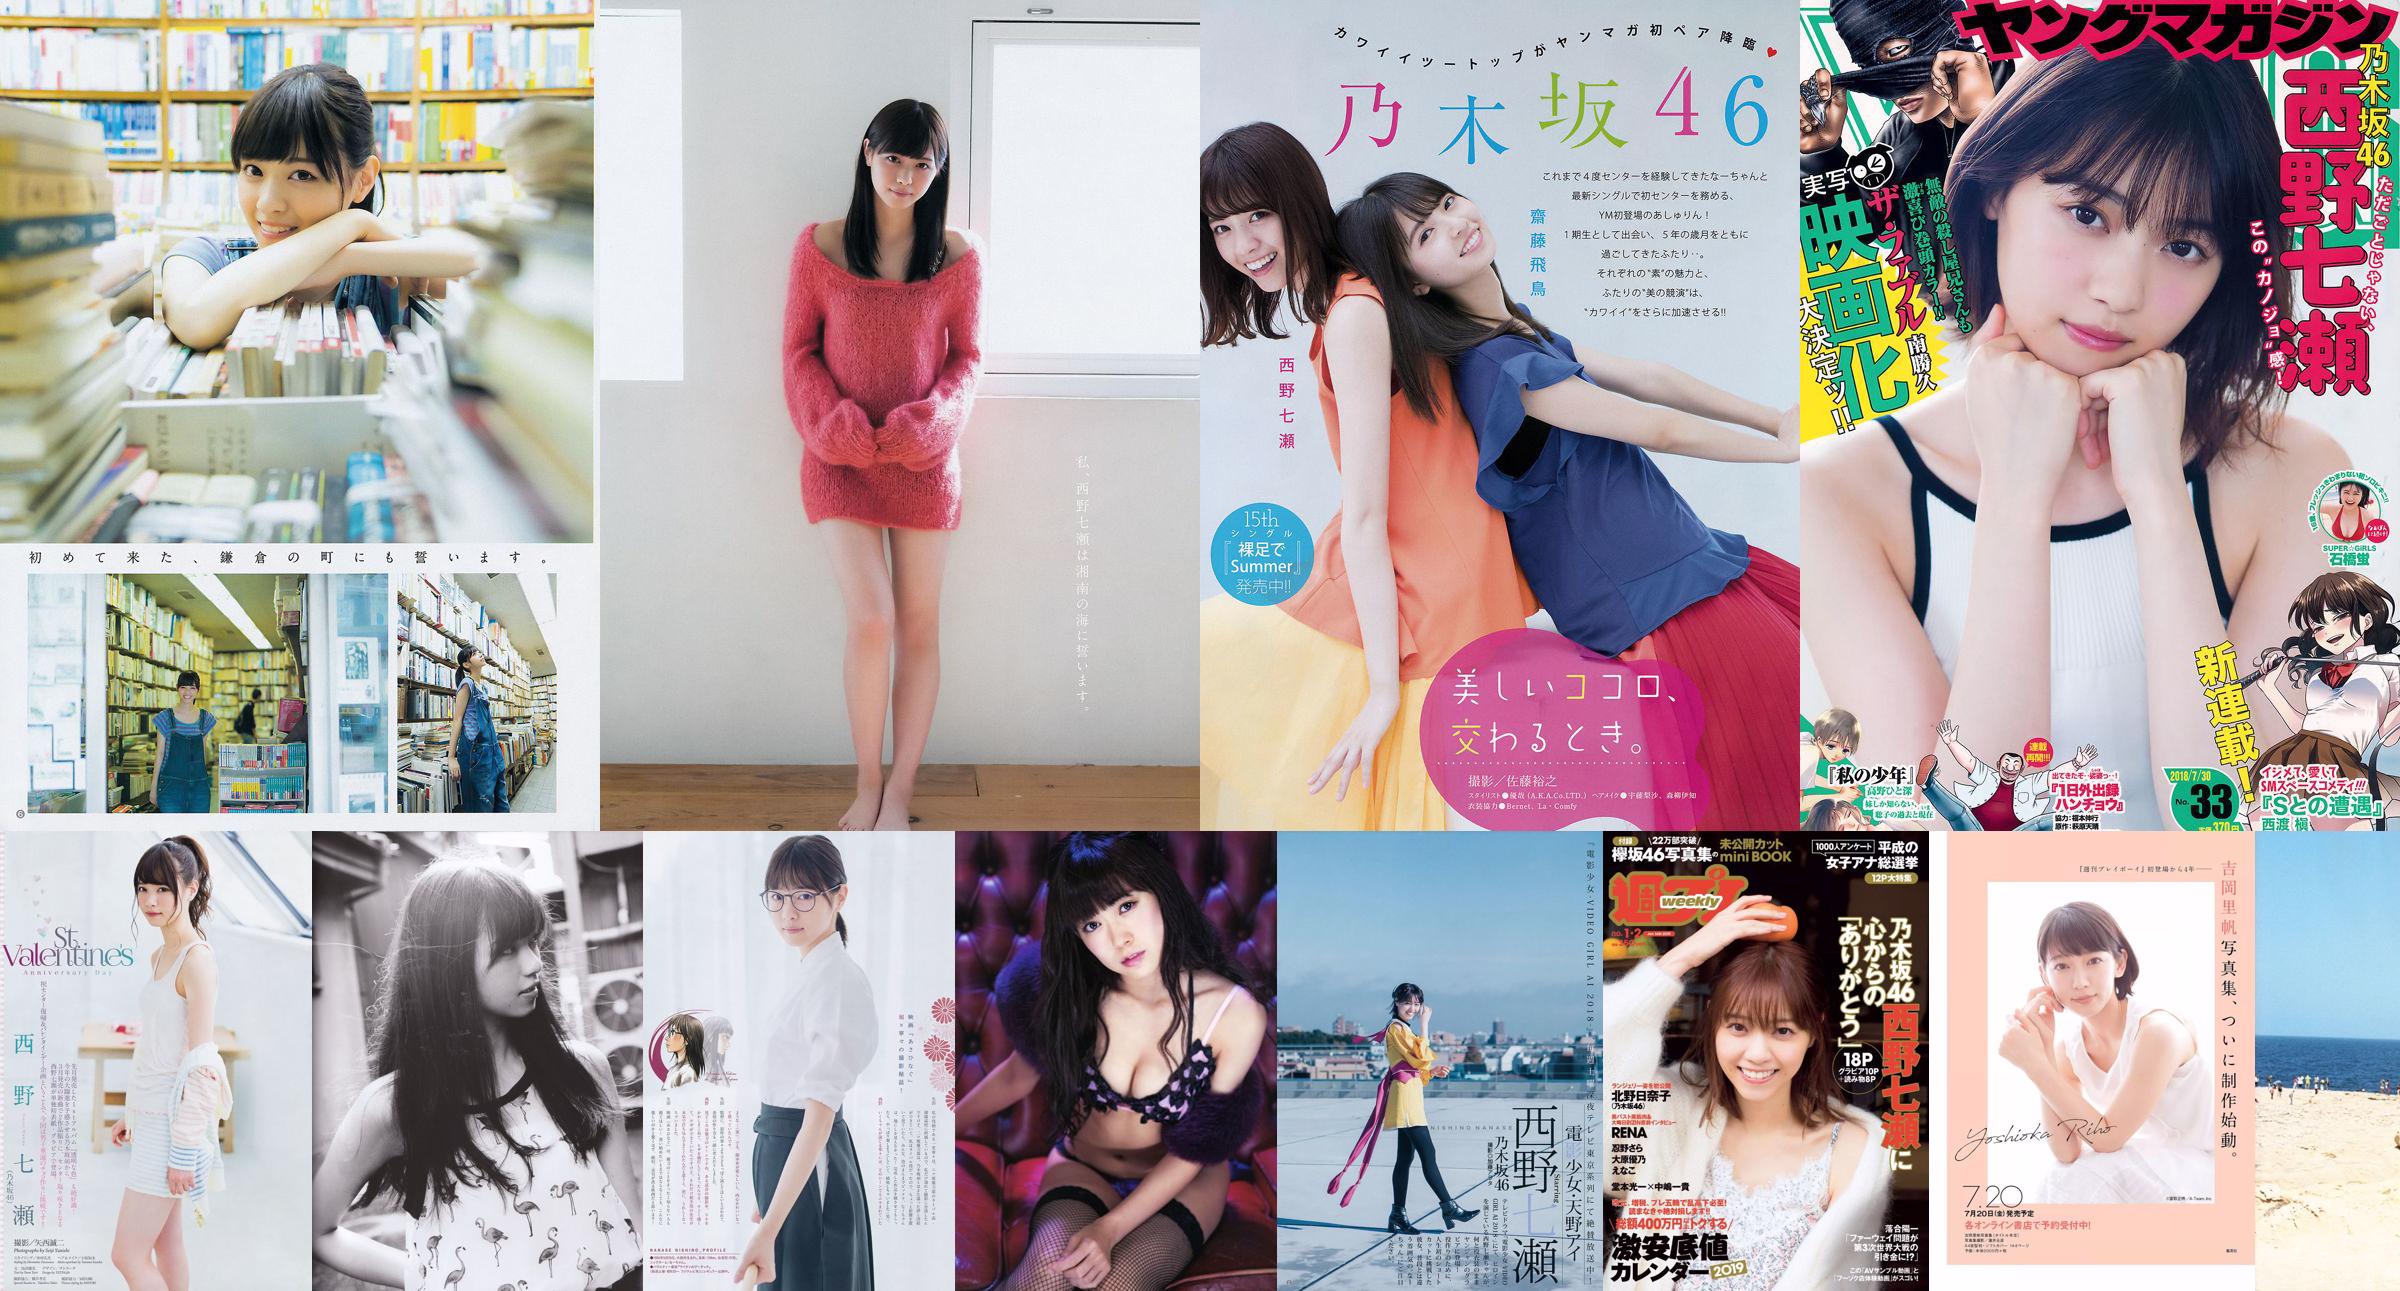 Nanase Nishino Marika Ito [Weekly Young Jump] 2015 No.14 Photo Magazine No.8d3955 Pagina 1